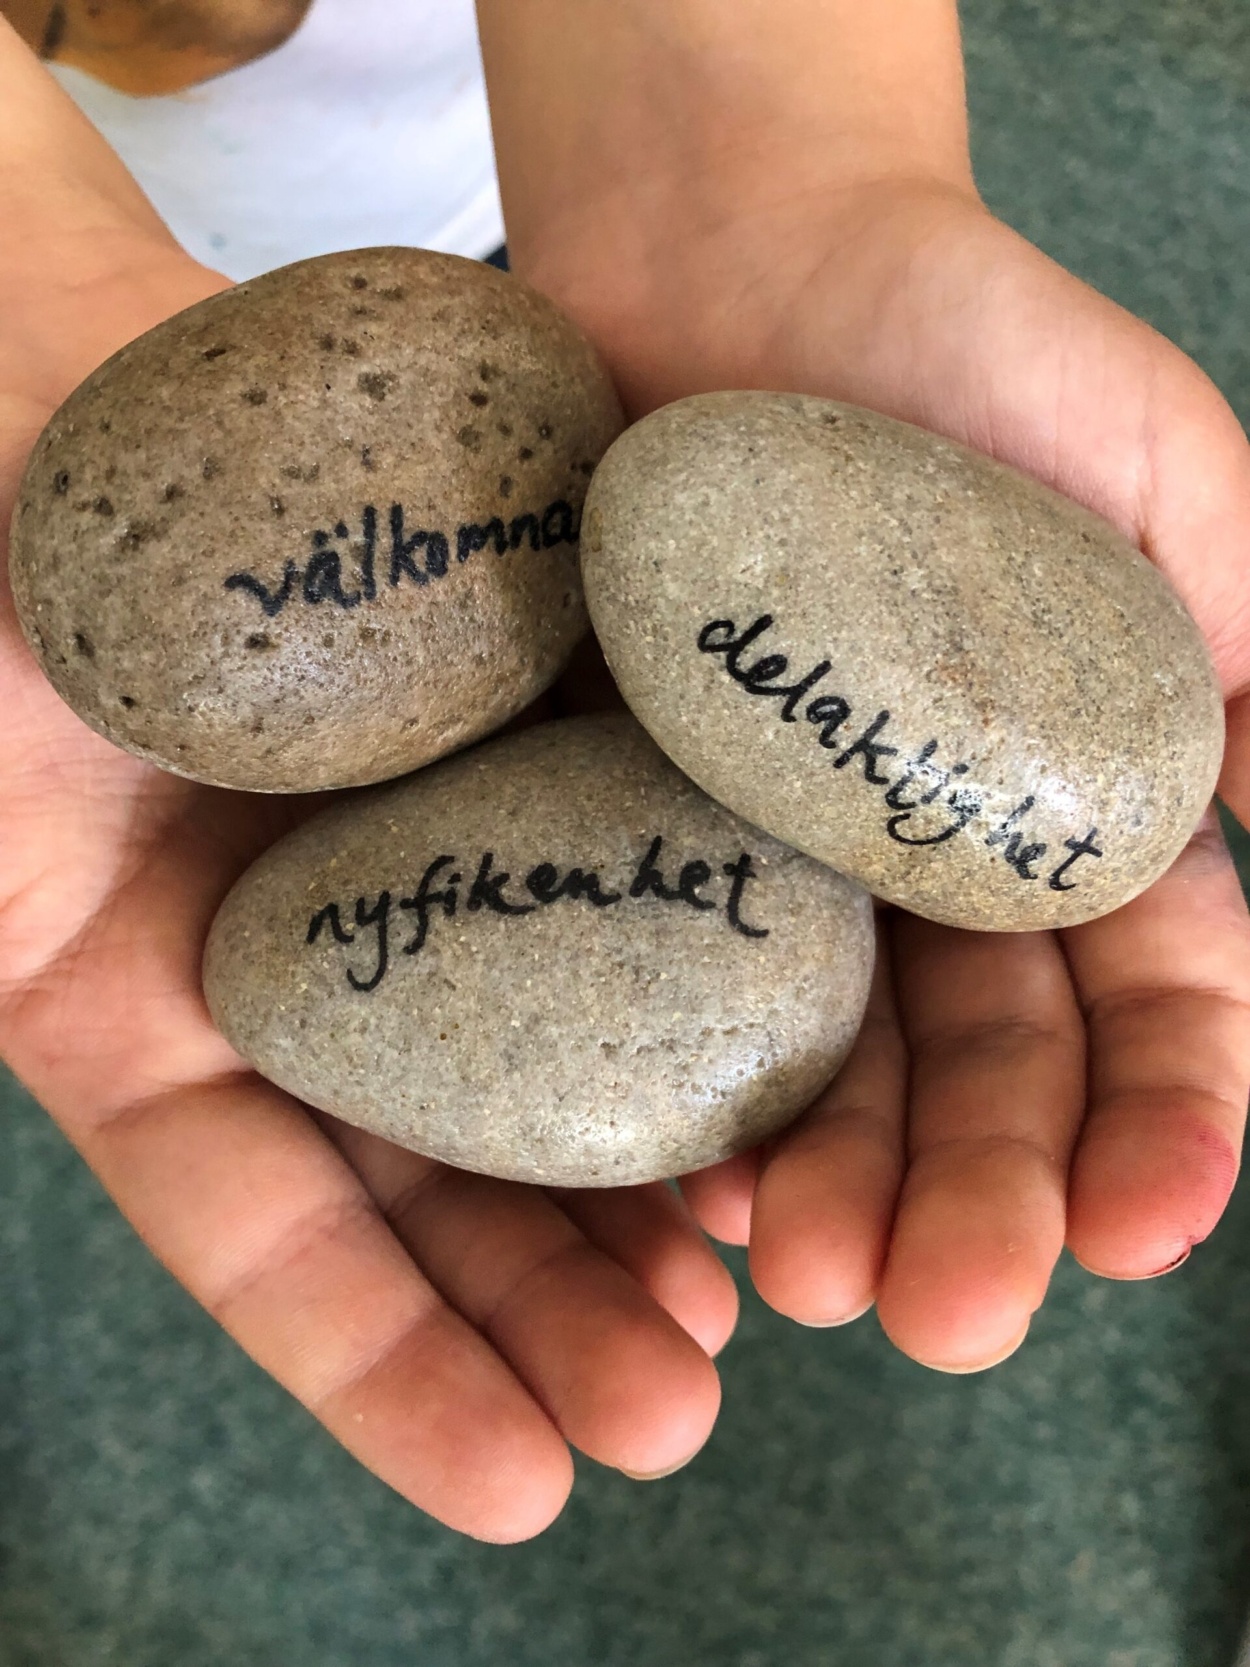 Tre stenar i hand med texten "Välkommen", "delaktighet" och "nyfikenhet